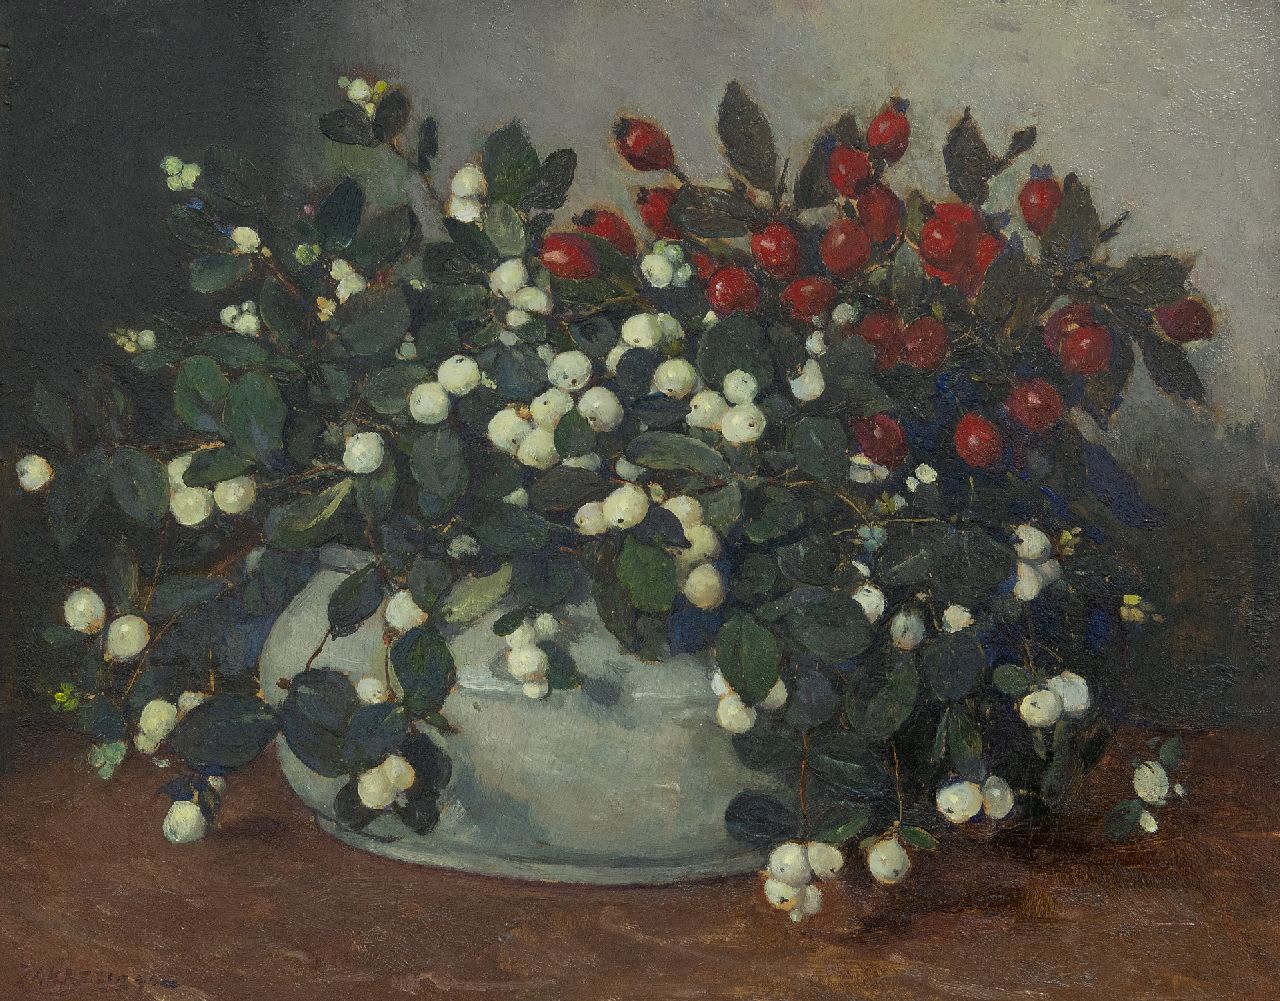 Akkeringa J.E.H.  | 'Johannes Evert' Hendrik Akkeringa, Sneeuwbessen en rozenbottels in witte vaas, olieverf op paneel 34,0 x 42,1 cm, gesigneerd linksonder